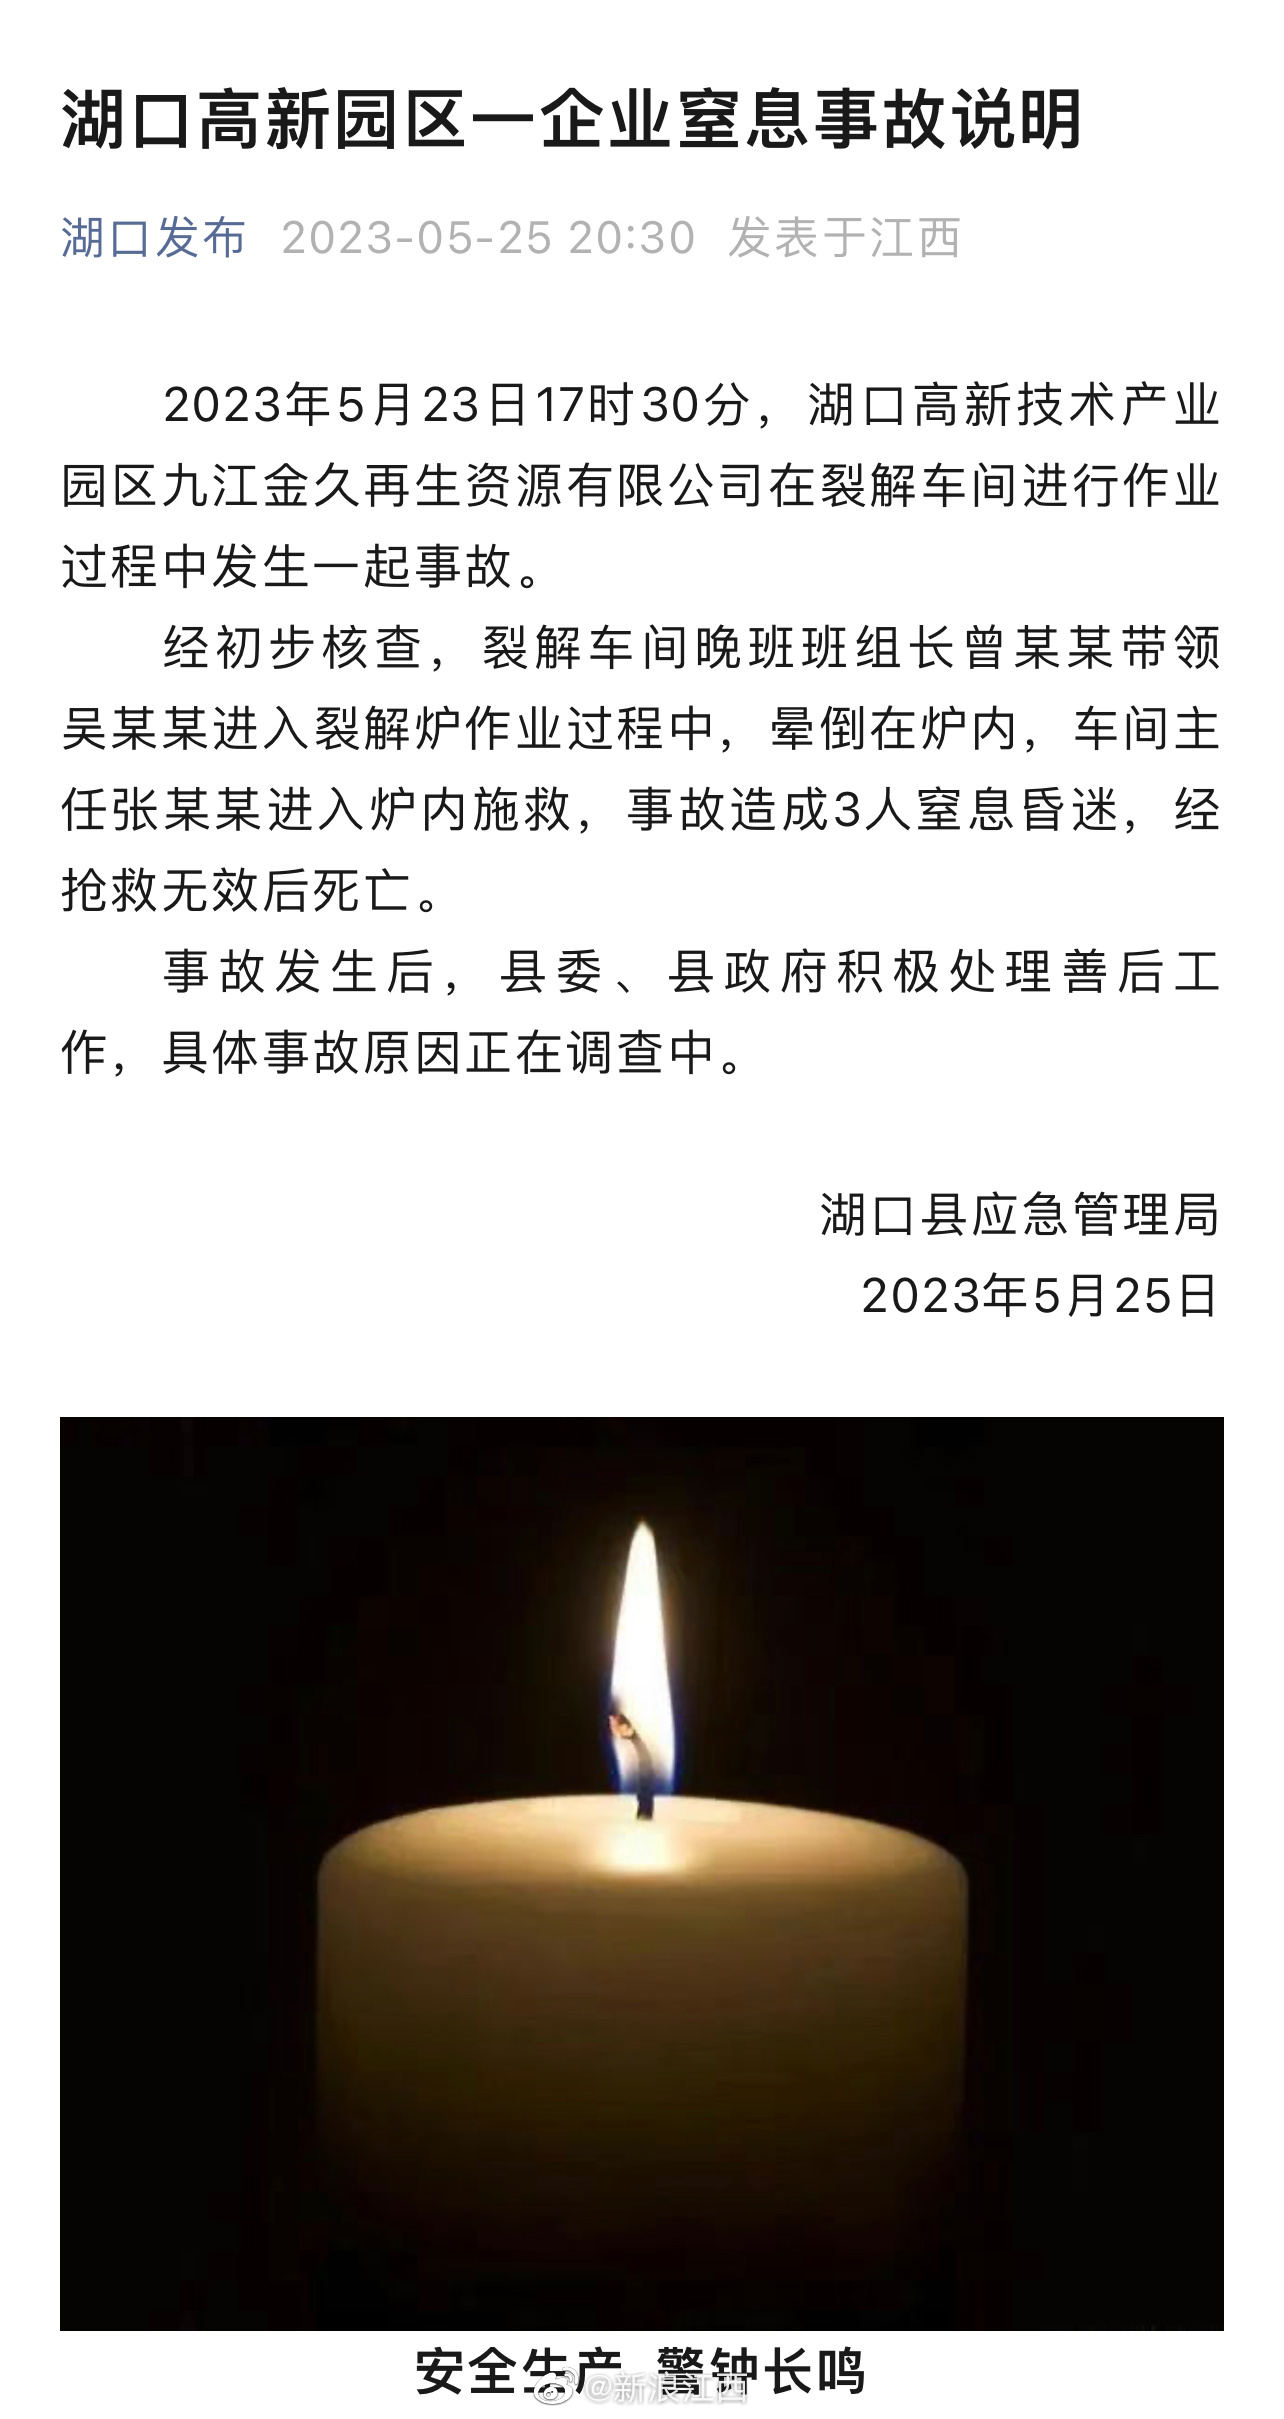 中国江西省で交通事故、17人死亡 - 2023年1月8日, Sputnik 日本